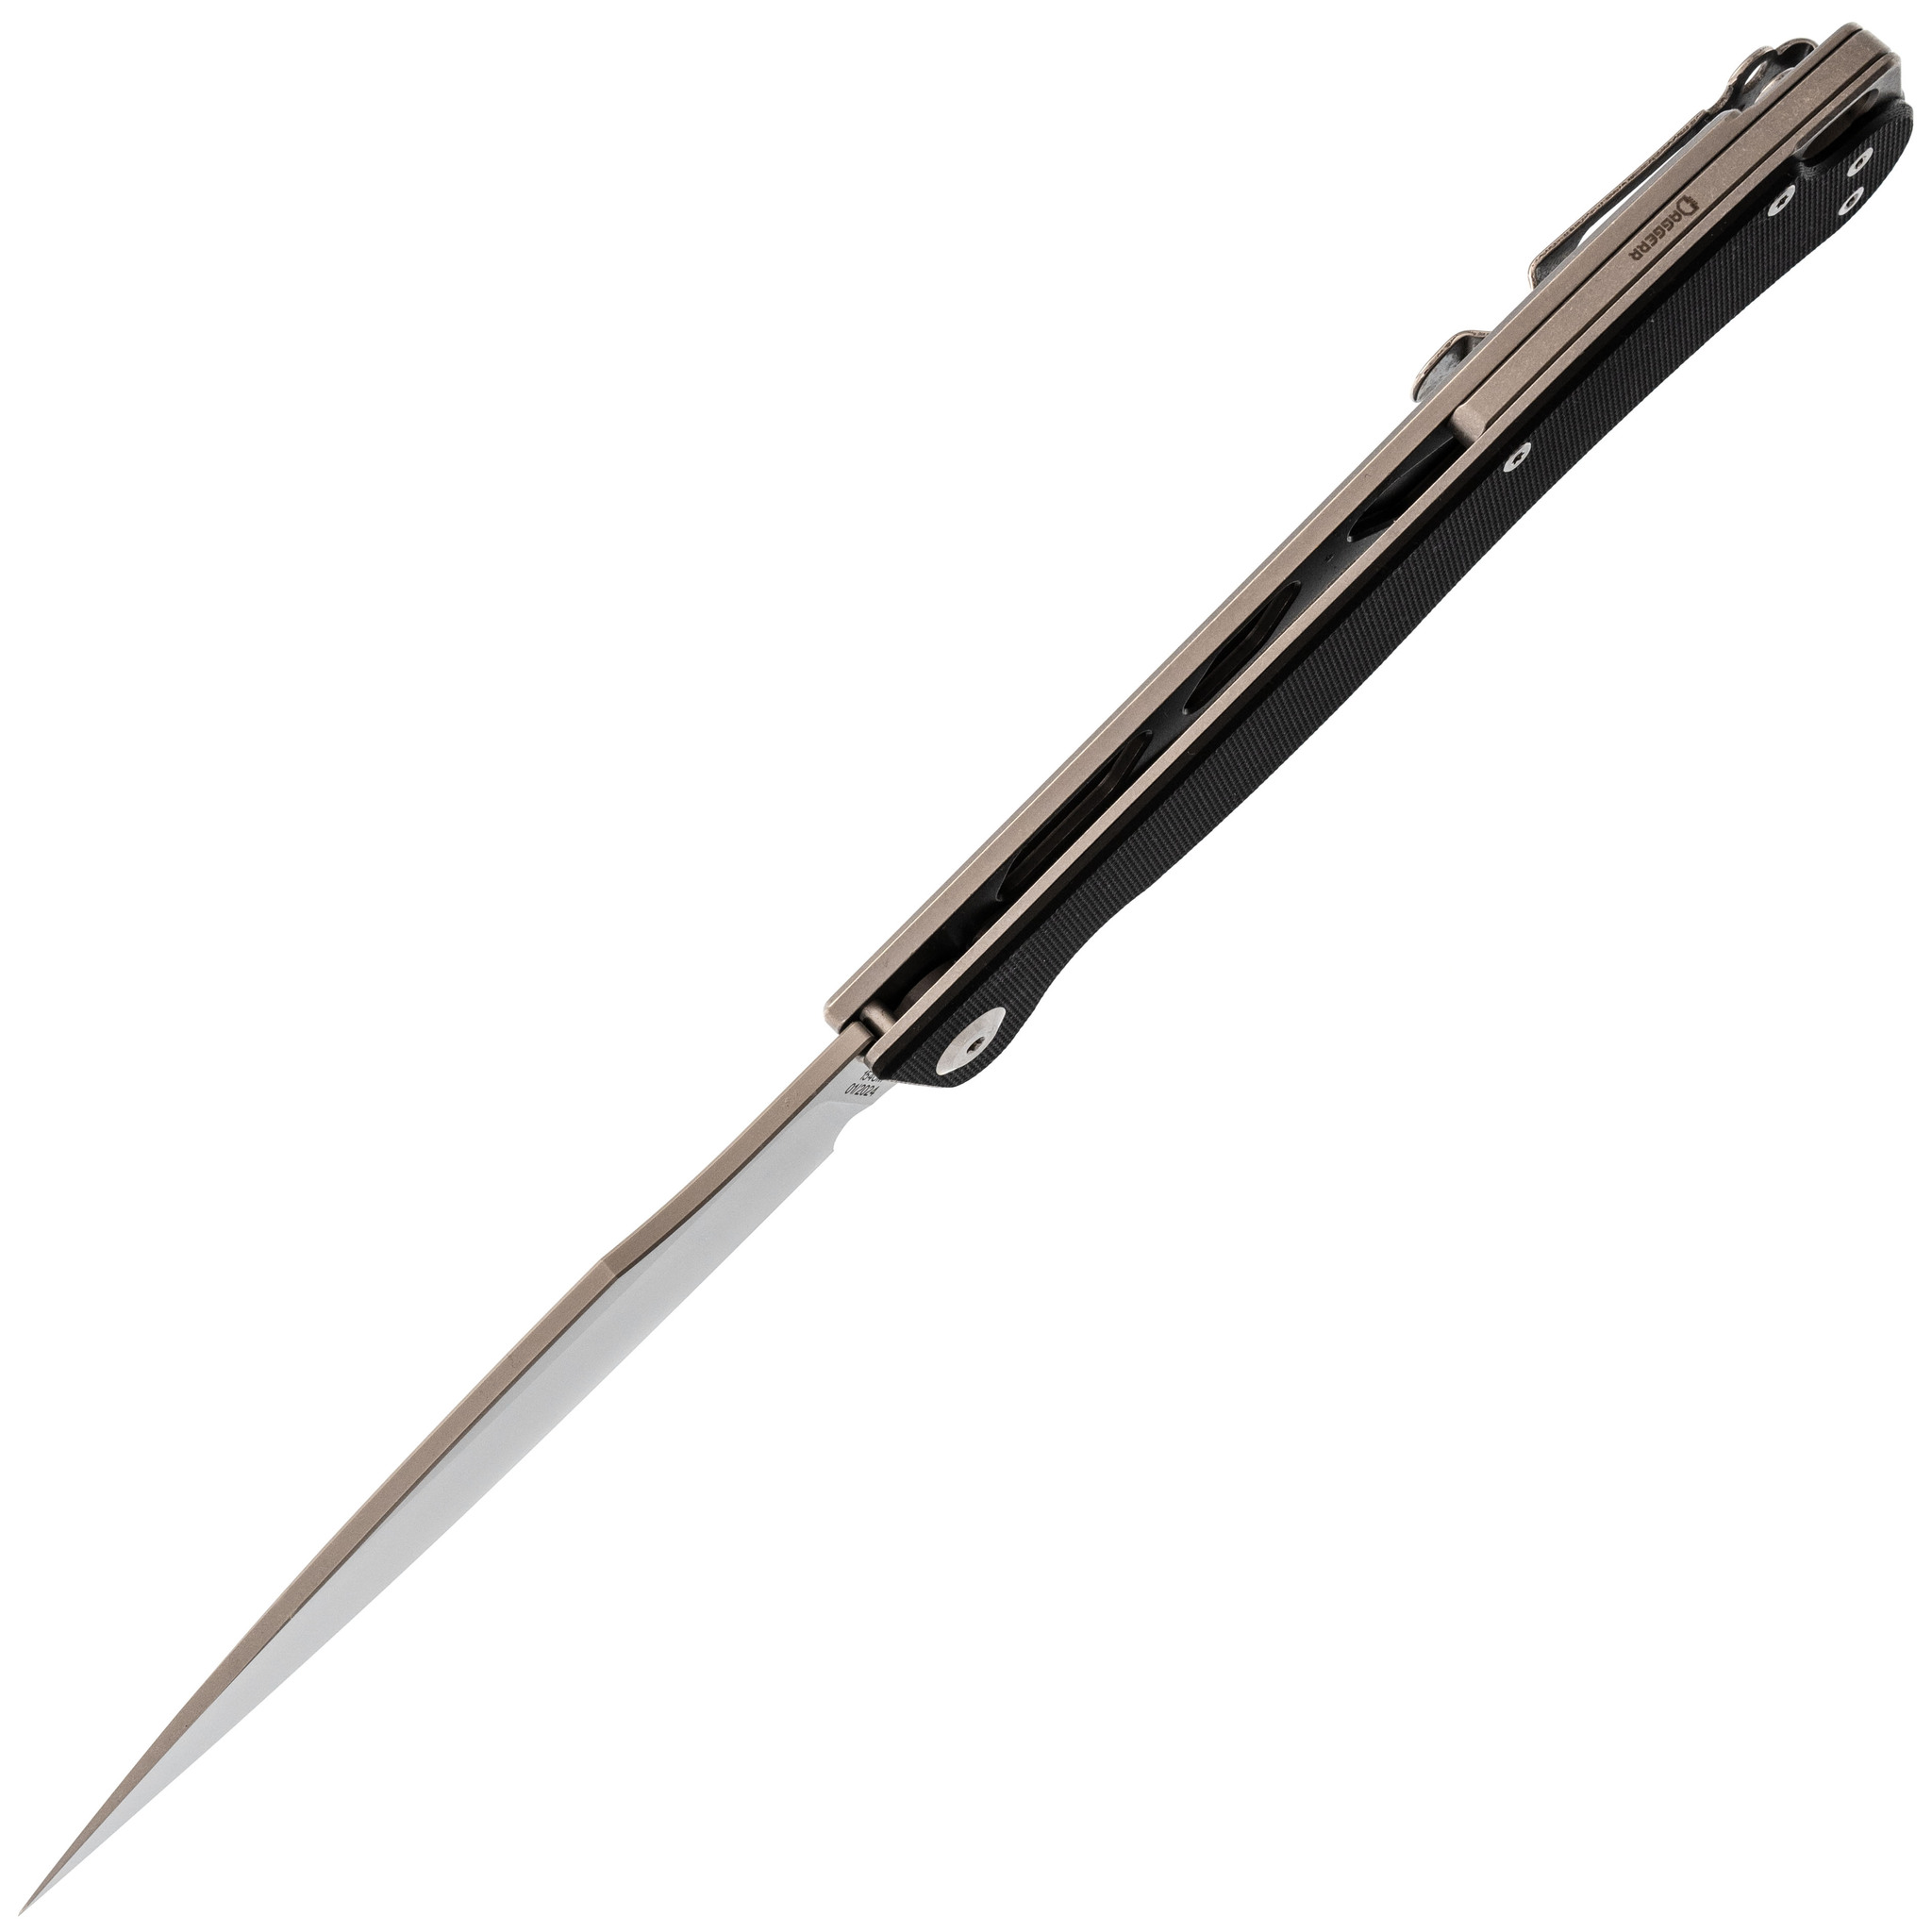 Складной нож Daggerr Condor Black Satin, сталь 154CM, рукоять G10 - фото 2